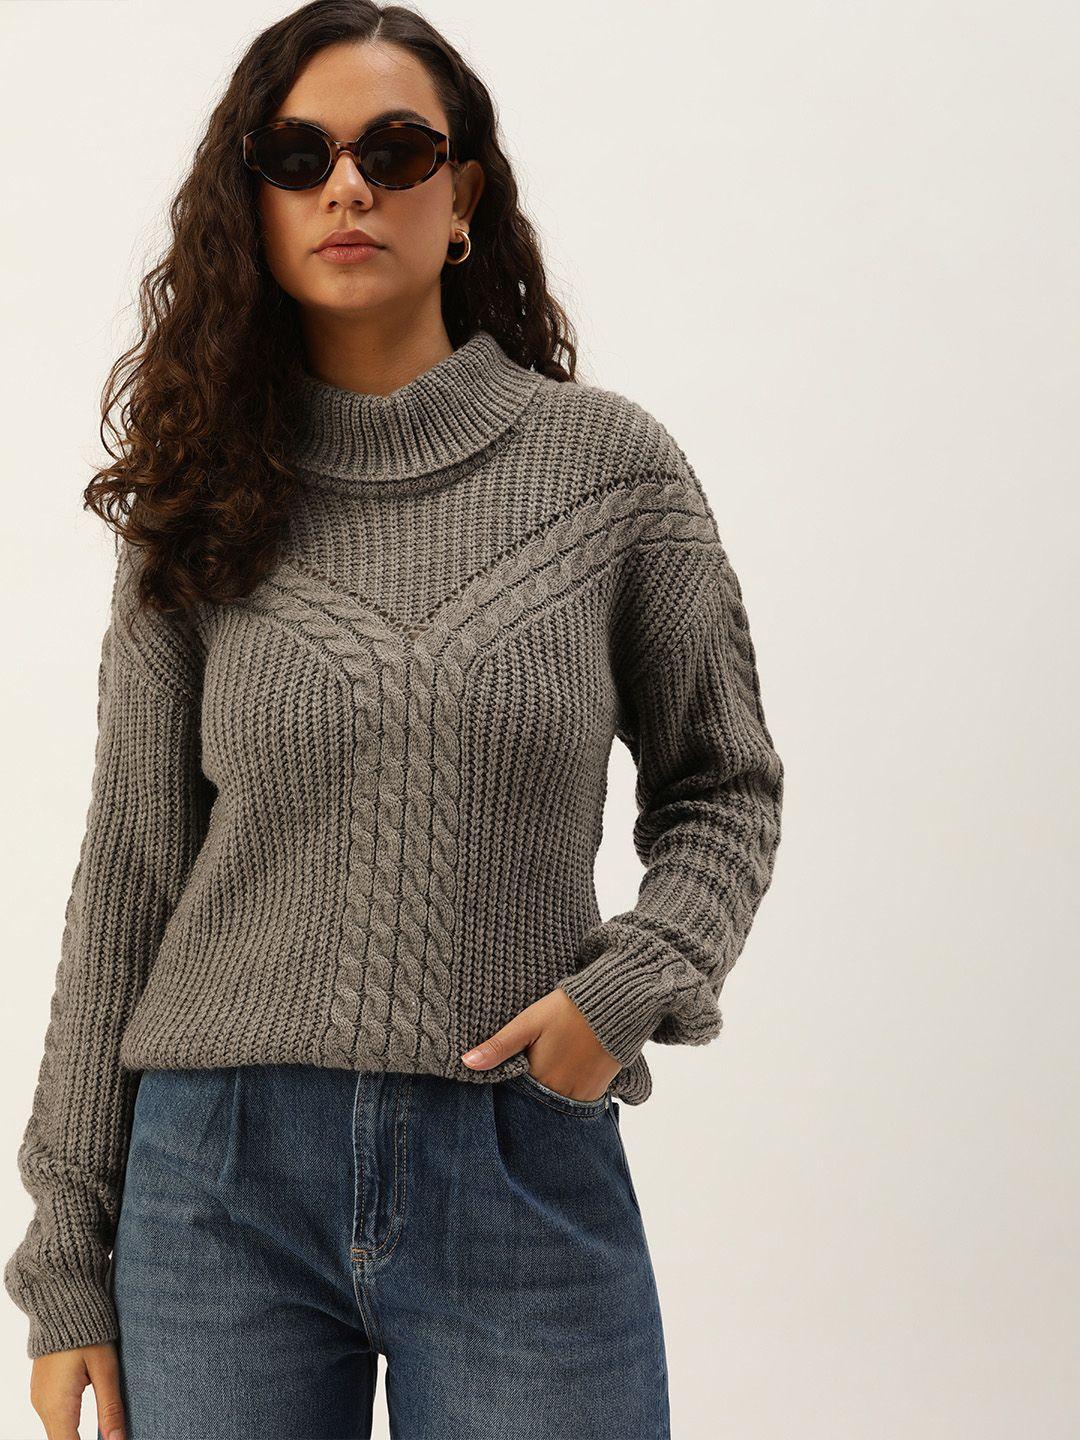 kook n keech women open knit pullover sweater